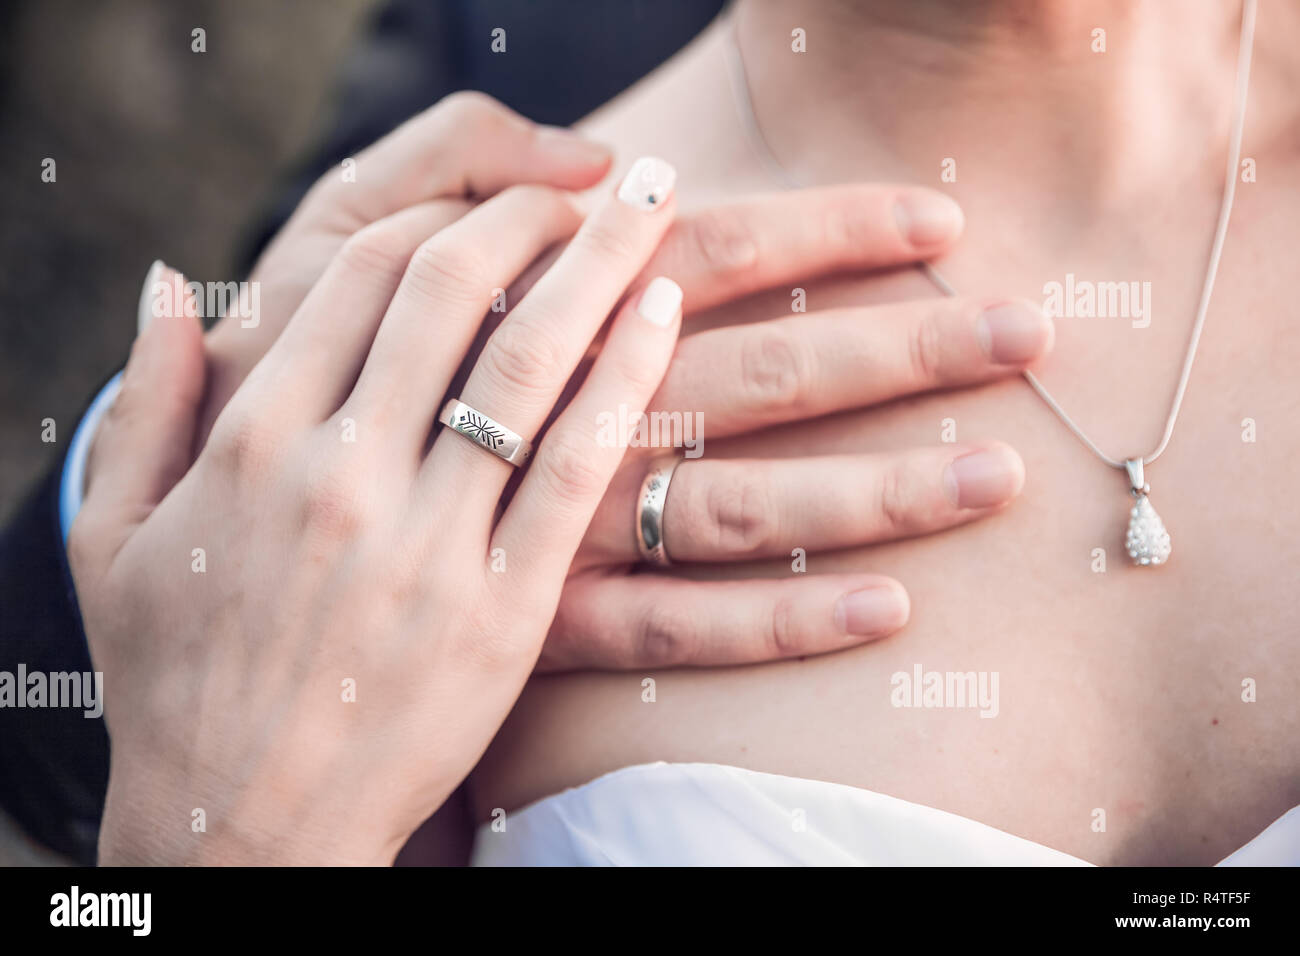 Imagen de las manos en el hombro de mujeres, concepto de boda Foto de stock